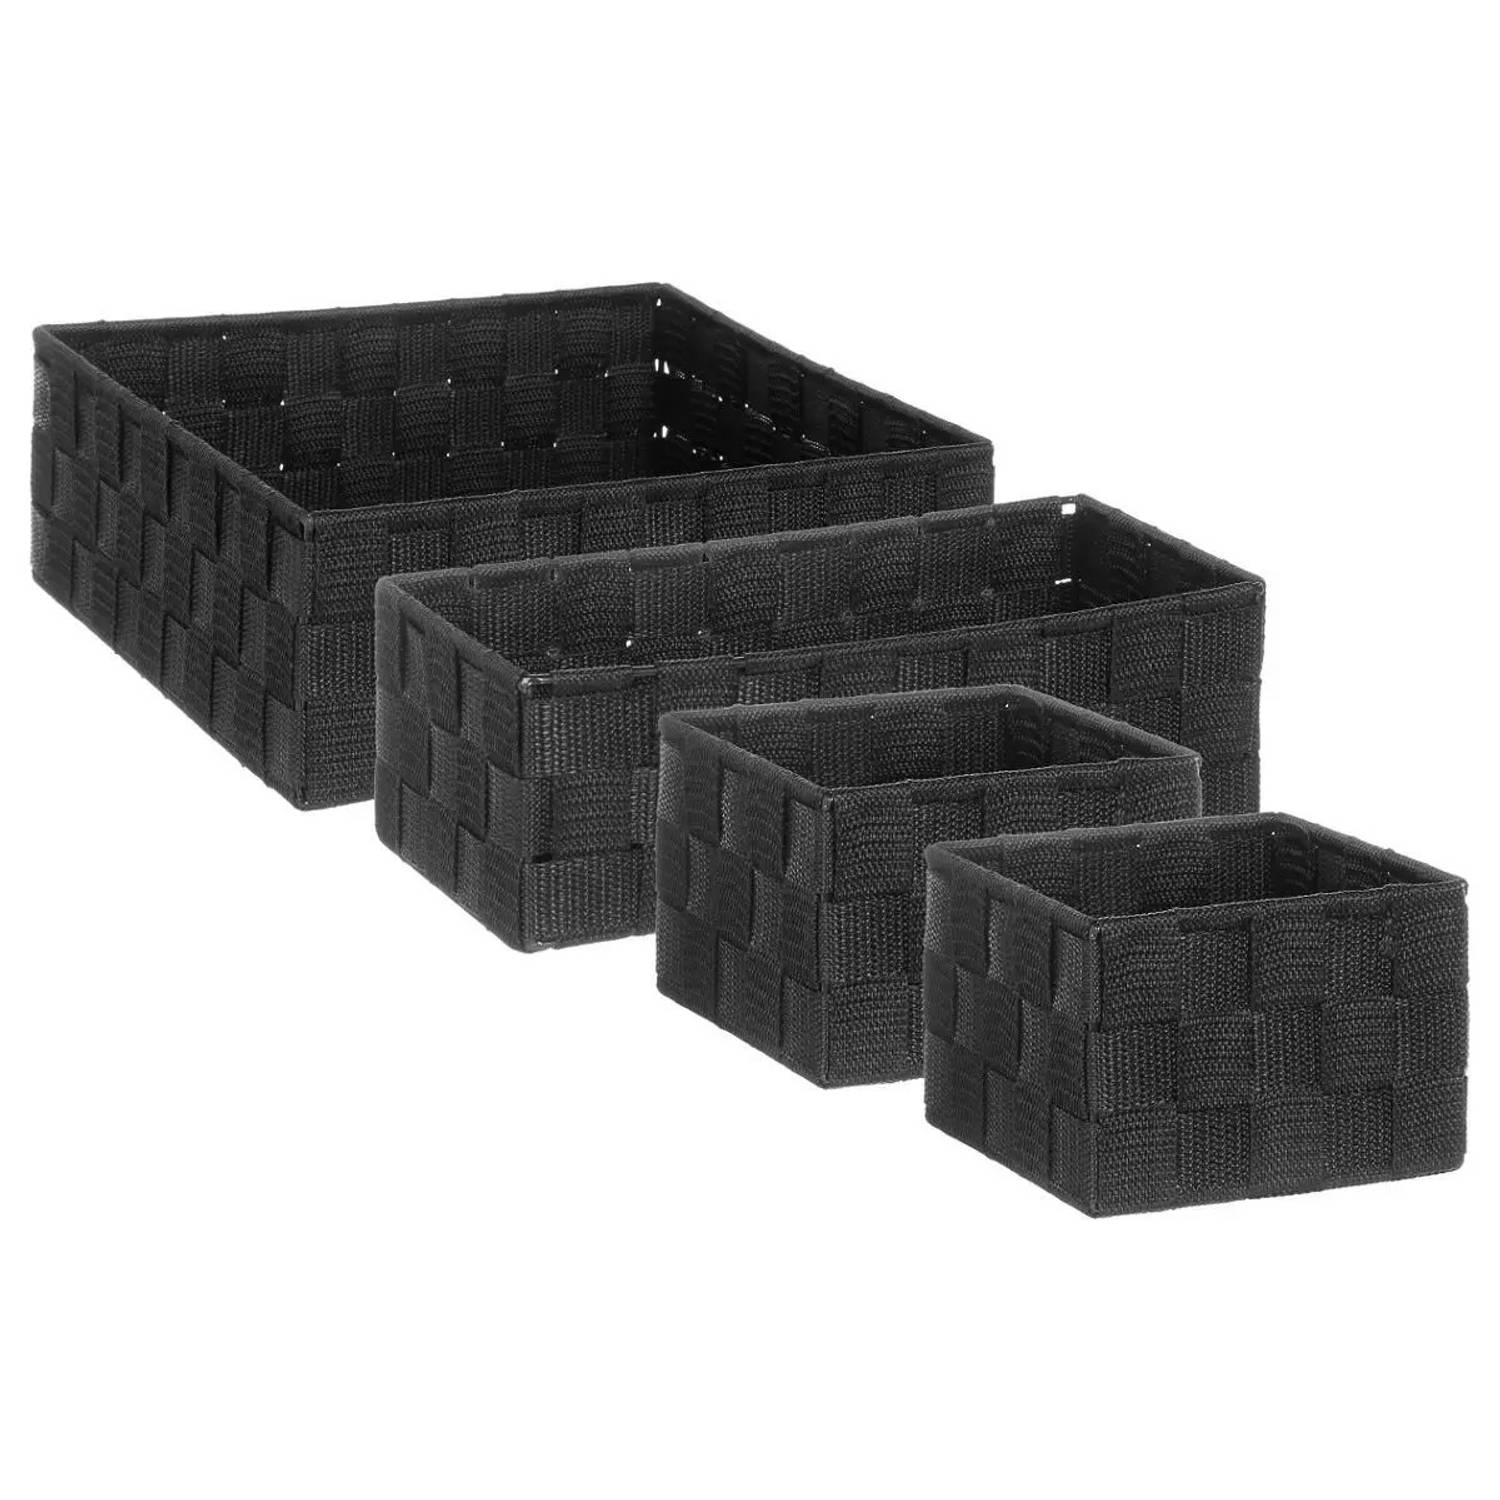 Set van 4x gevlochten opbergmanden vierkant zwart - Kast / badkamer mandjes verschillende formaten